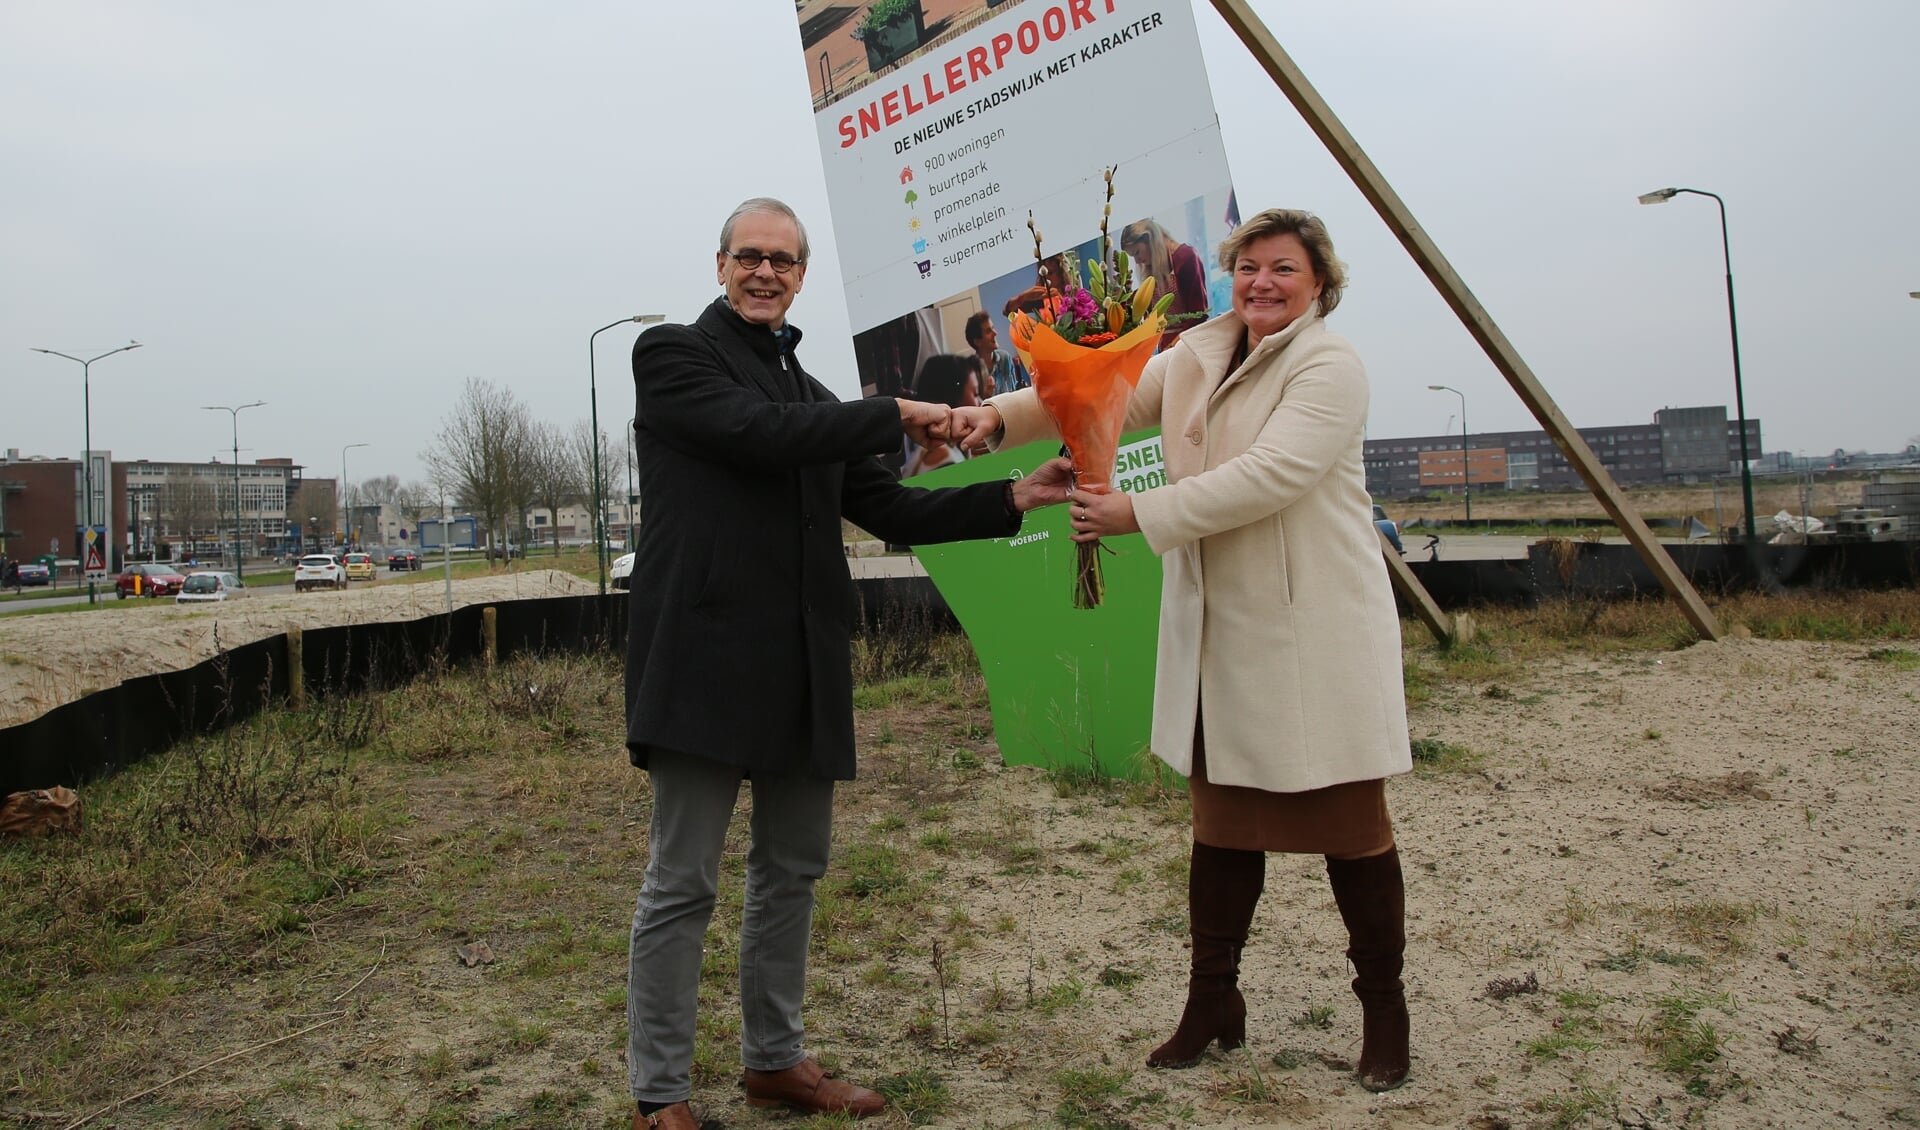 • Wethouder Tymon de Weger en directeur-bestuurder Saar Spanjaard op de bouwlocatie in Snellerpoort.